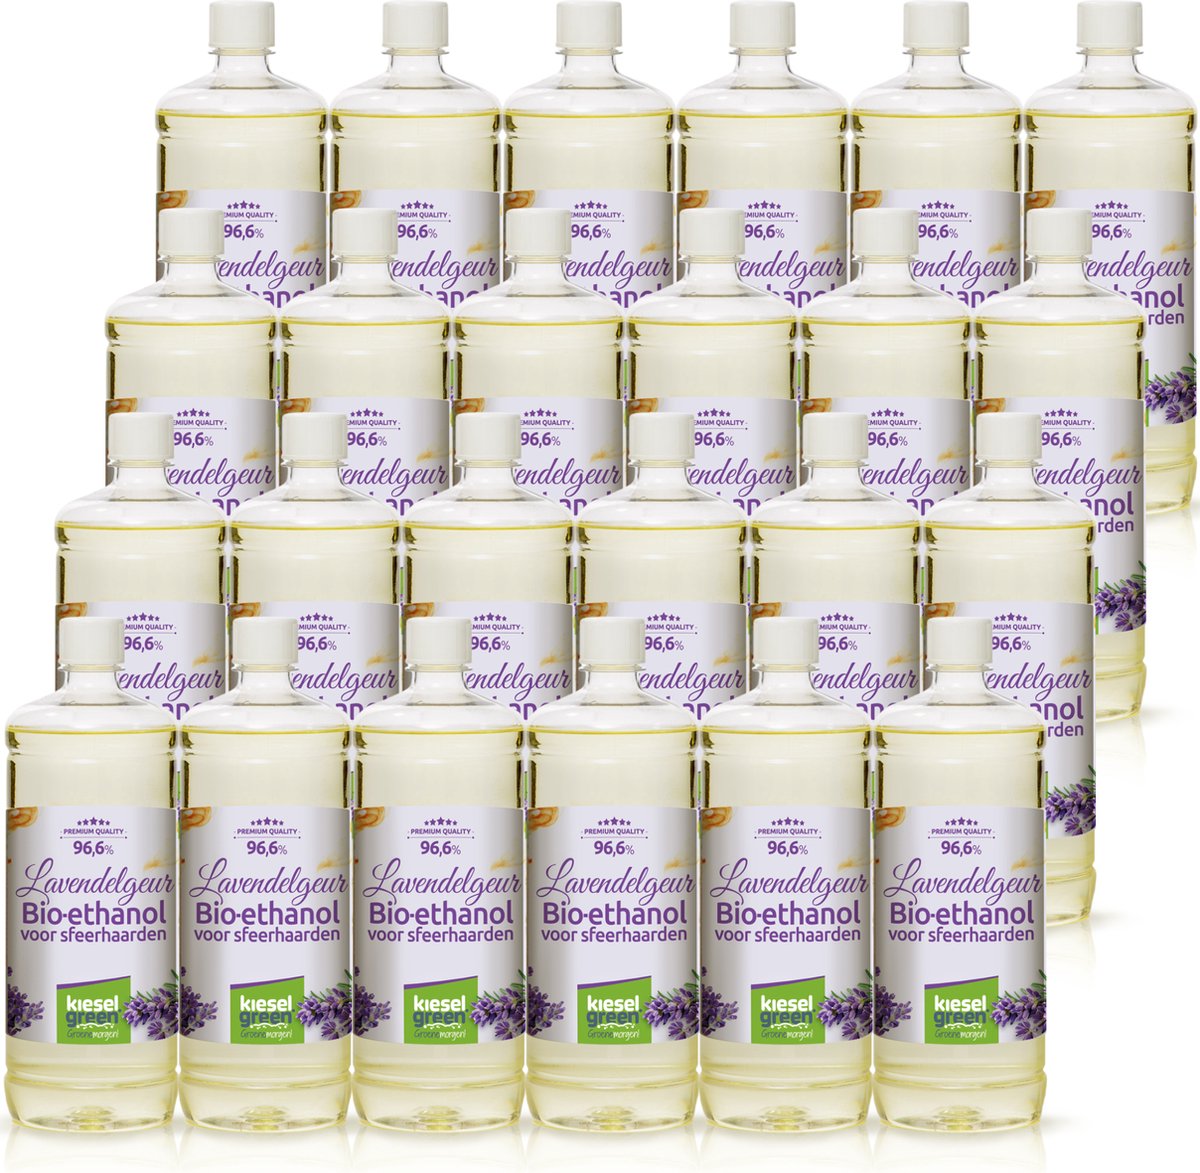 KieselGreen 24 Liter Bio-Ethanol met Lavendel Aroma - Bioethanol 96.6%, Veilig voor Sfeerhaarden en Tafelhaarden, Milieuvriendelijk - Premium Kwaliteit Ethanol voor Binnen en Buiten